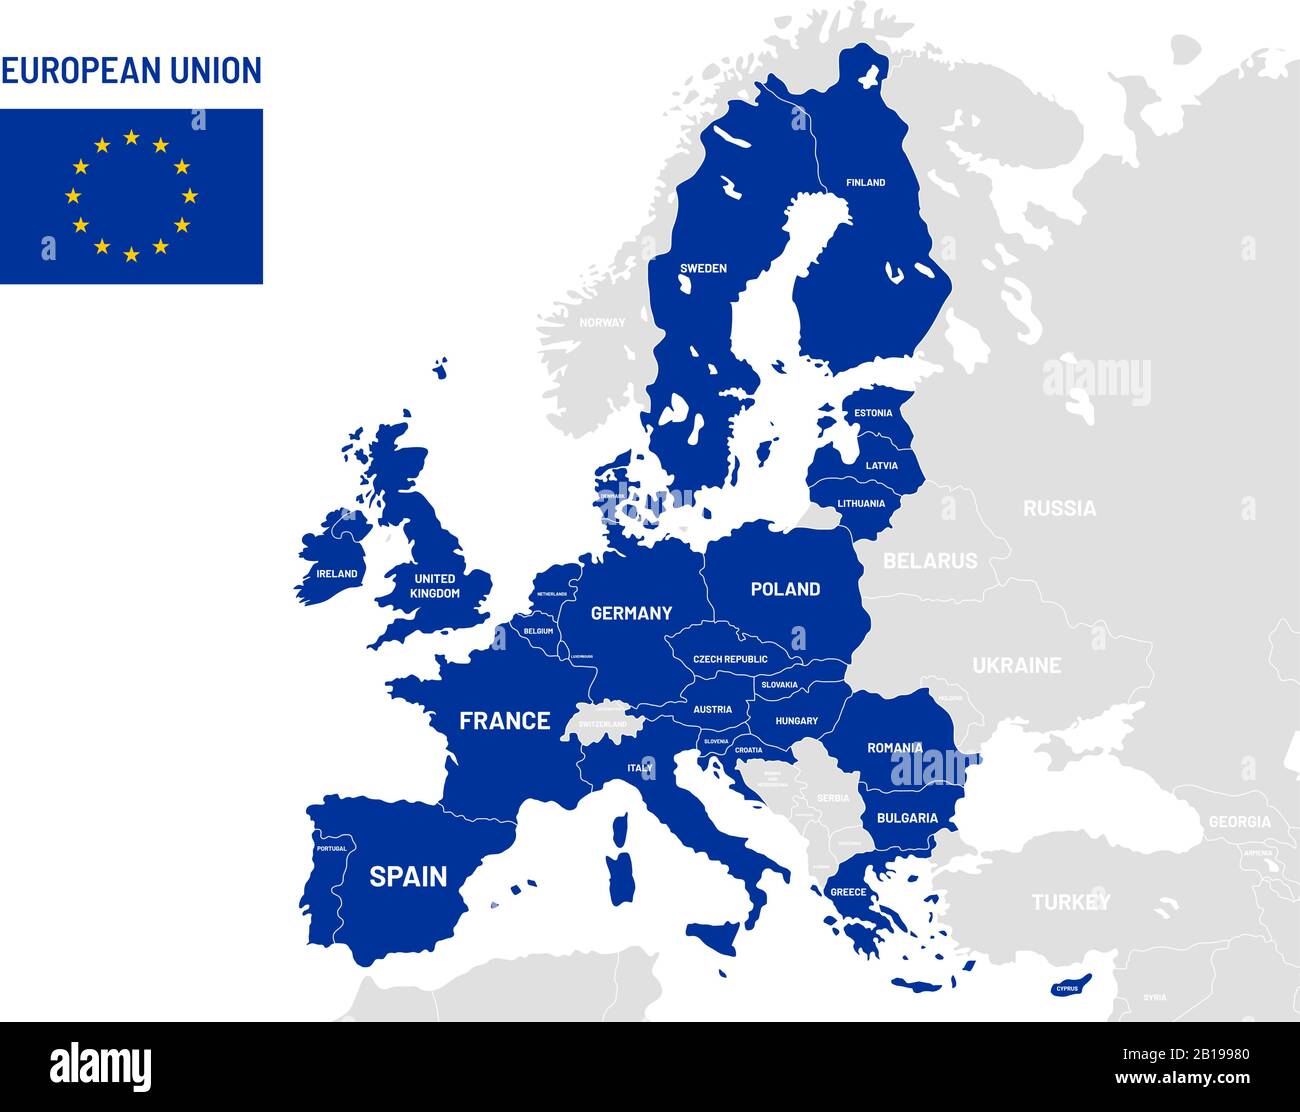 Carte des pays de l'Union européenne. Noms des pays membres de l'UE, illustration vectorielle des cartes de localisation des terres en europe Illustration de Vecteur